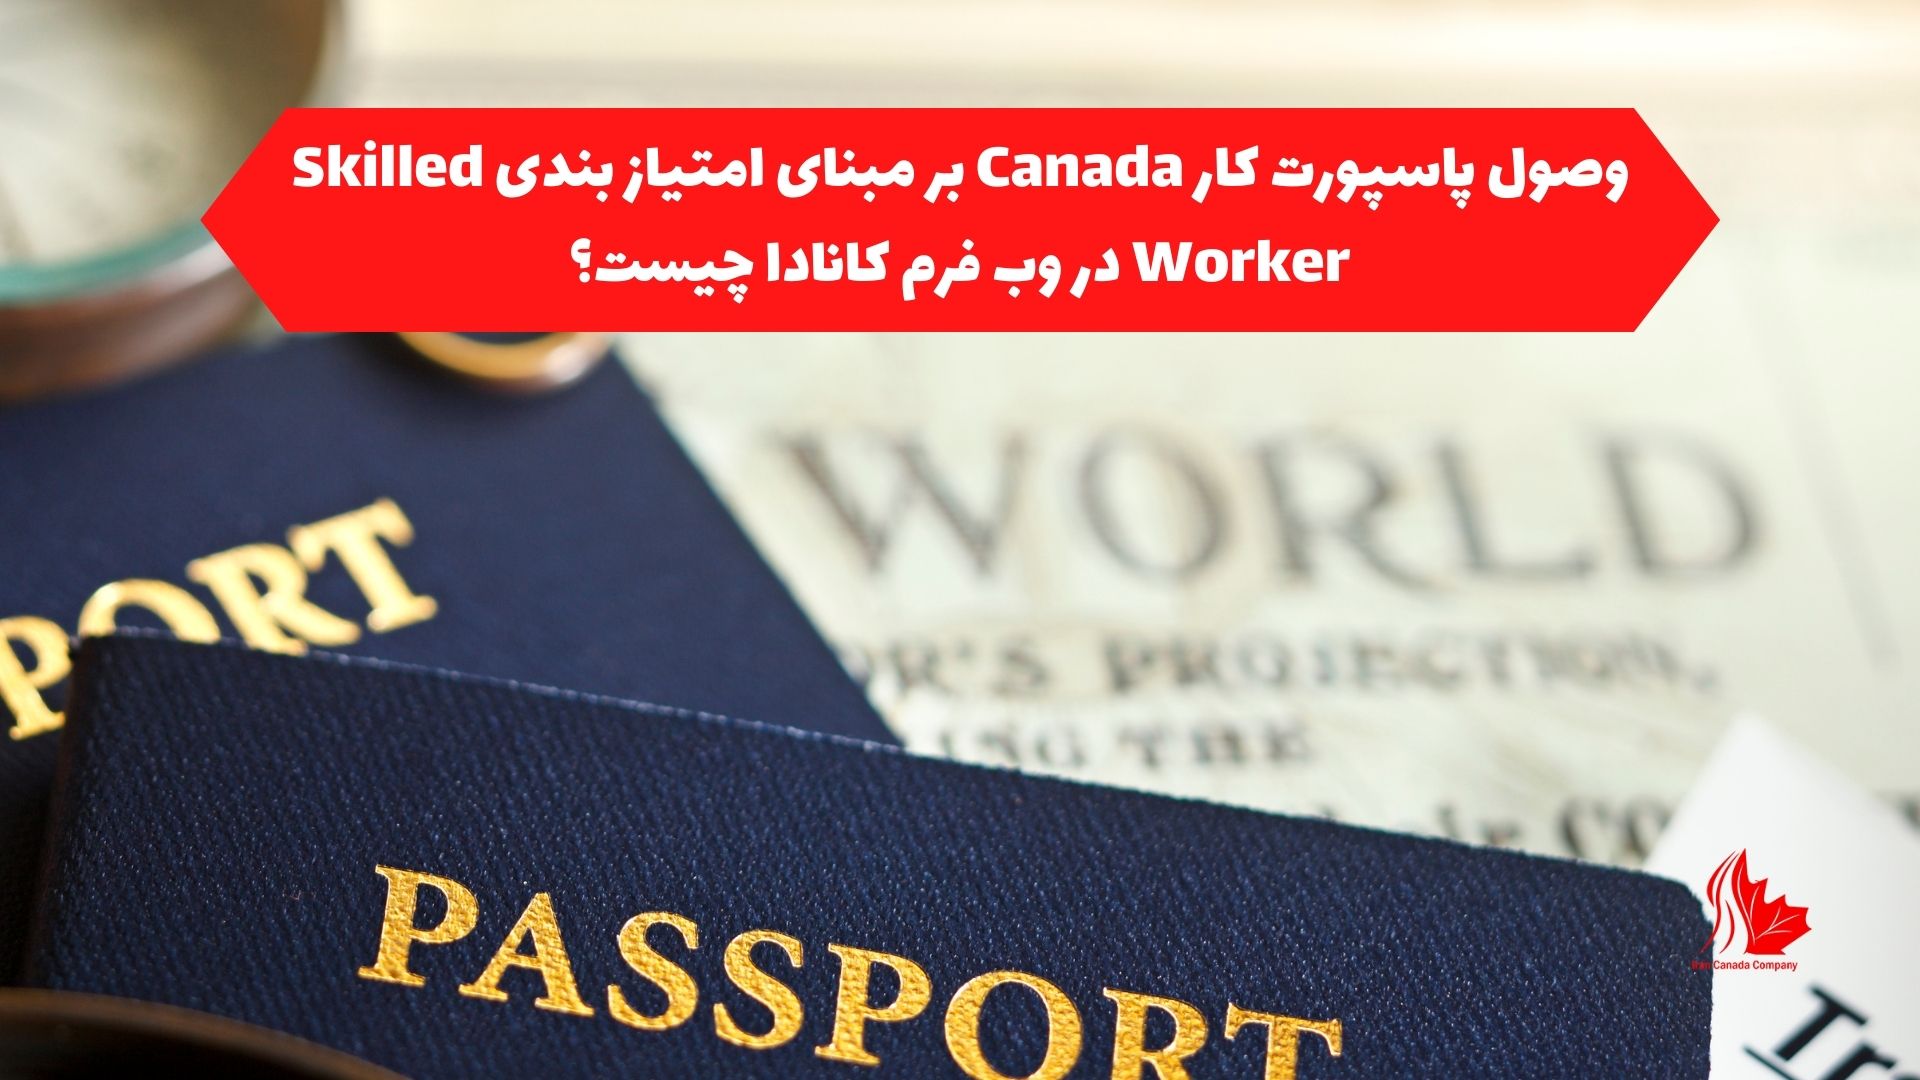 وصول پاسپورت کار Canada بر مبنای امتیاز بندی Skilled Worker در وب فرم کانادا چیست؟